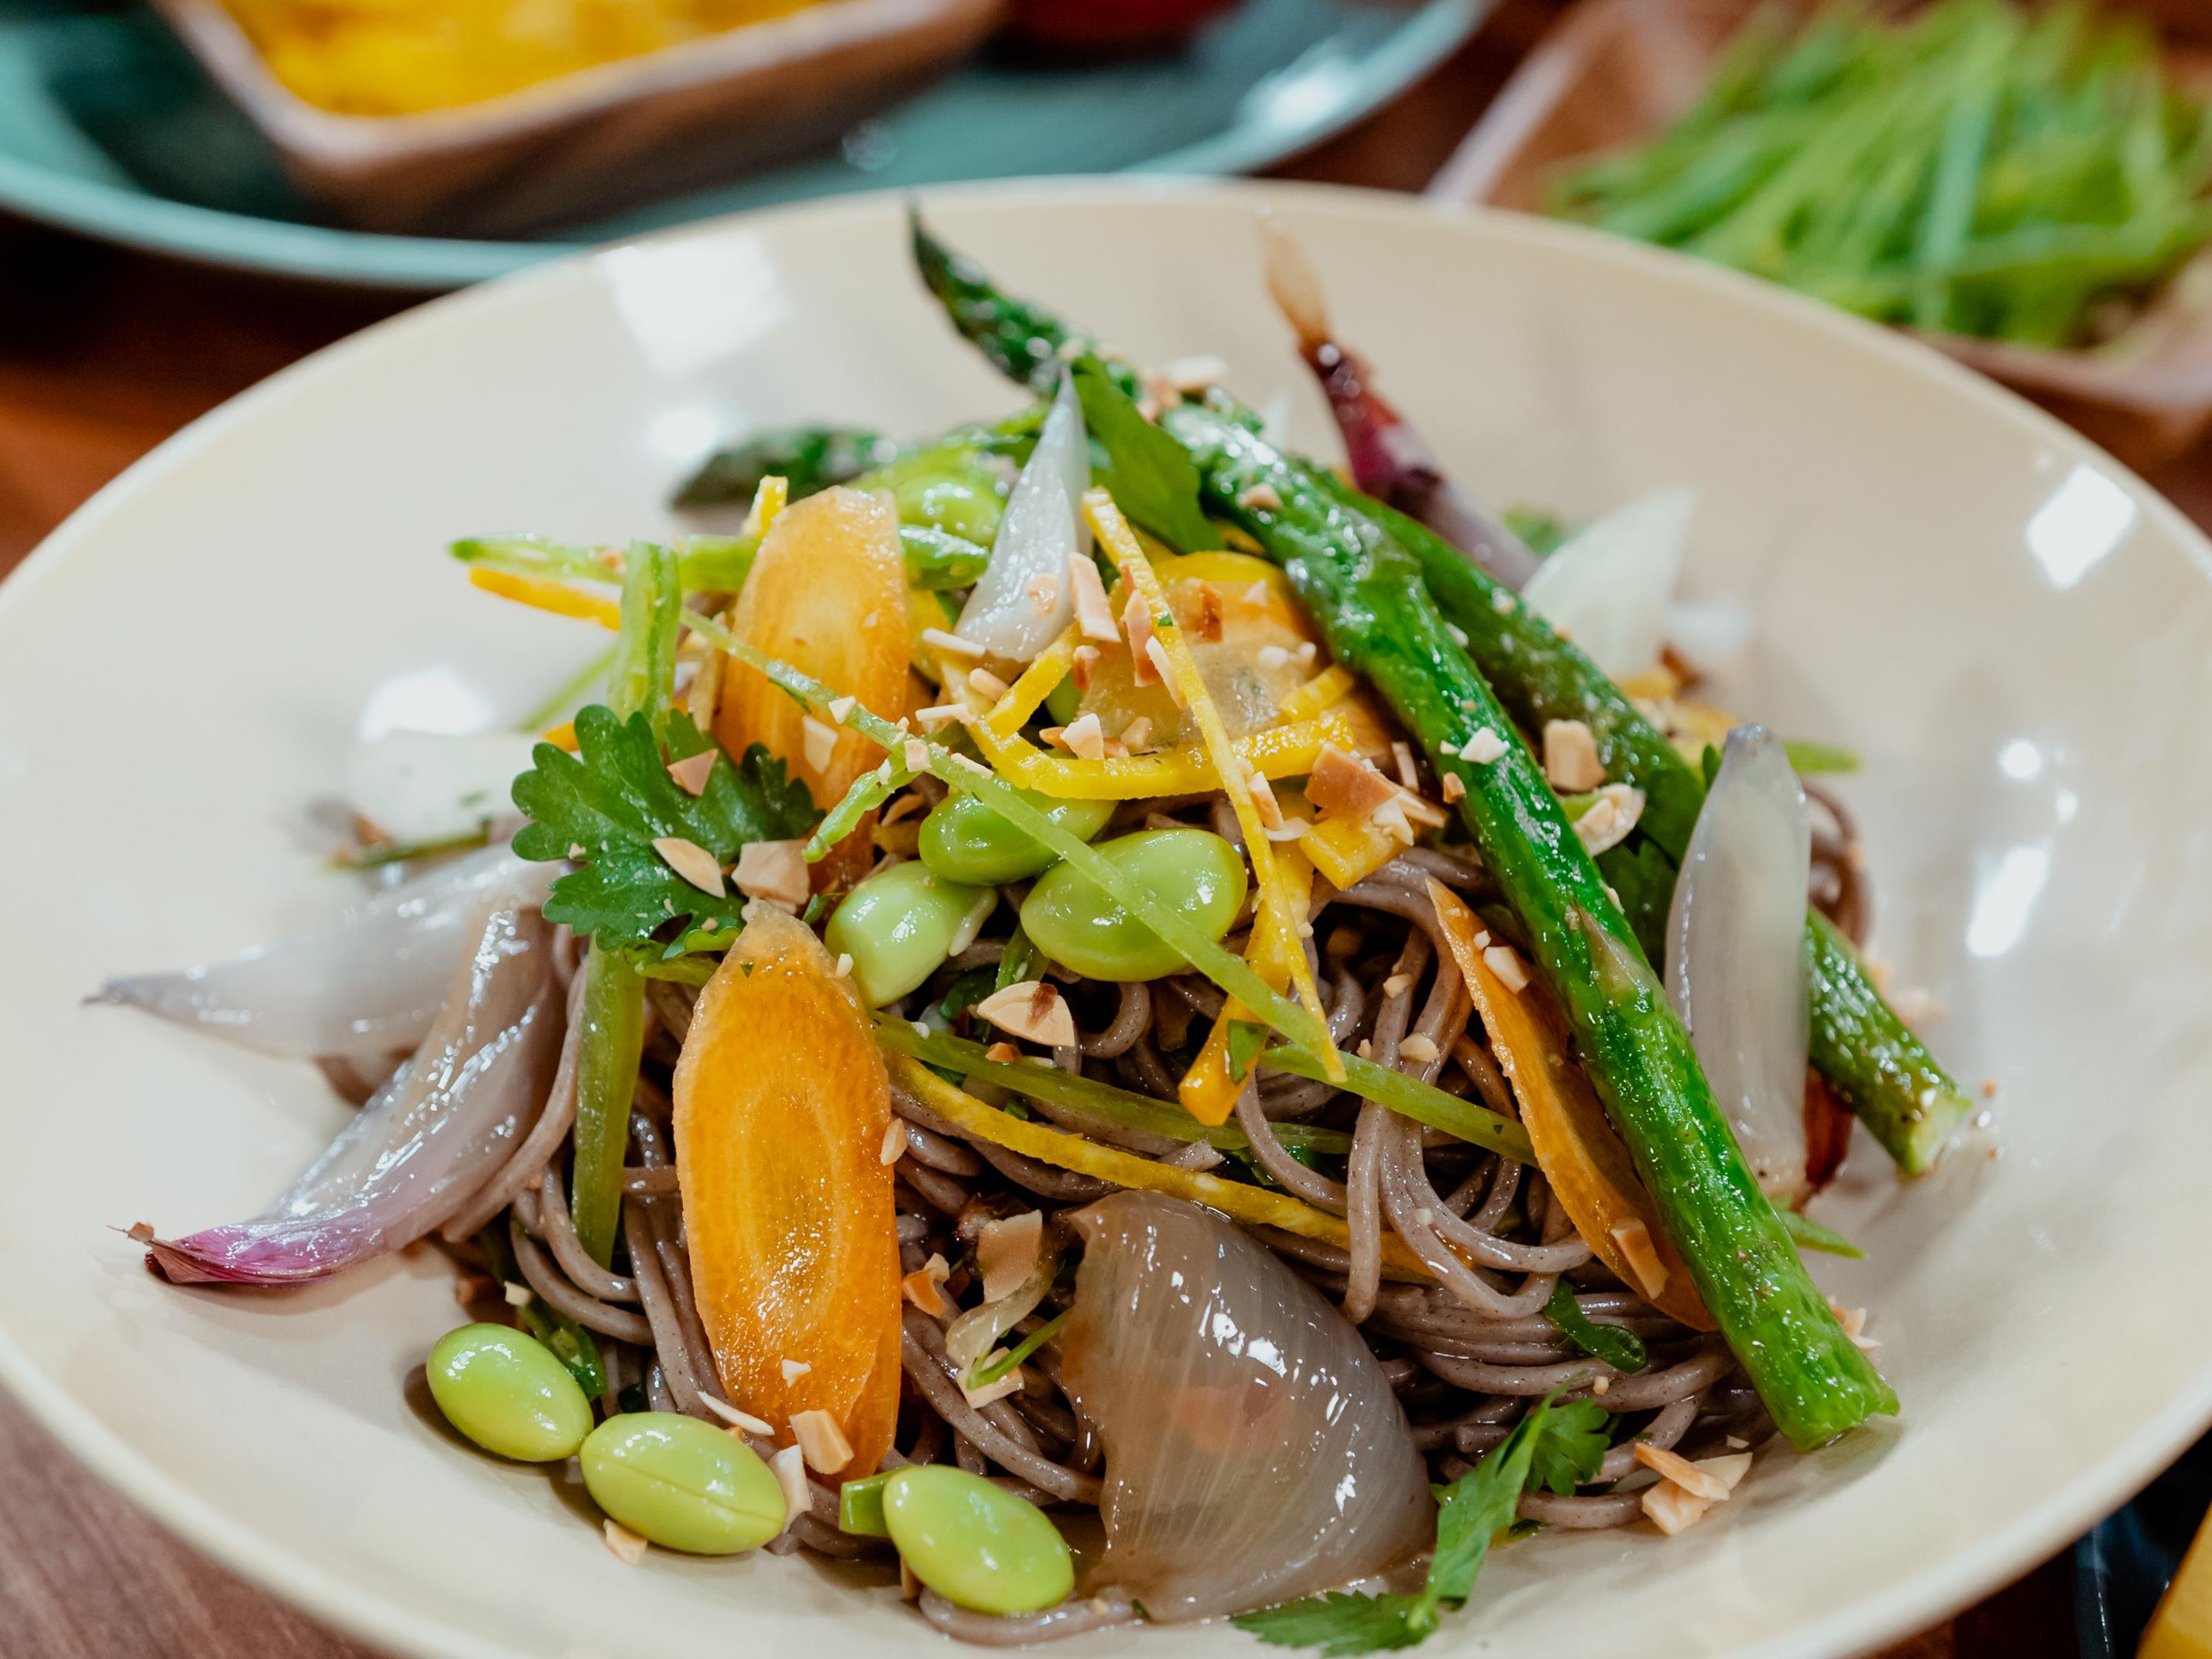 Salade de nouilles soba au sésame - Hop dans le wok!